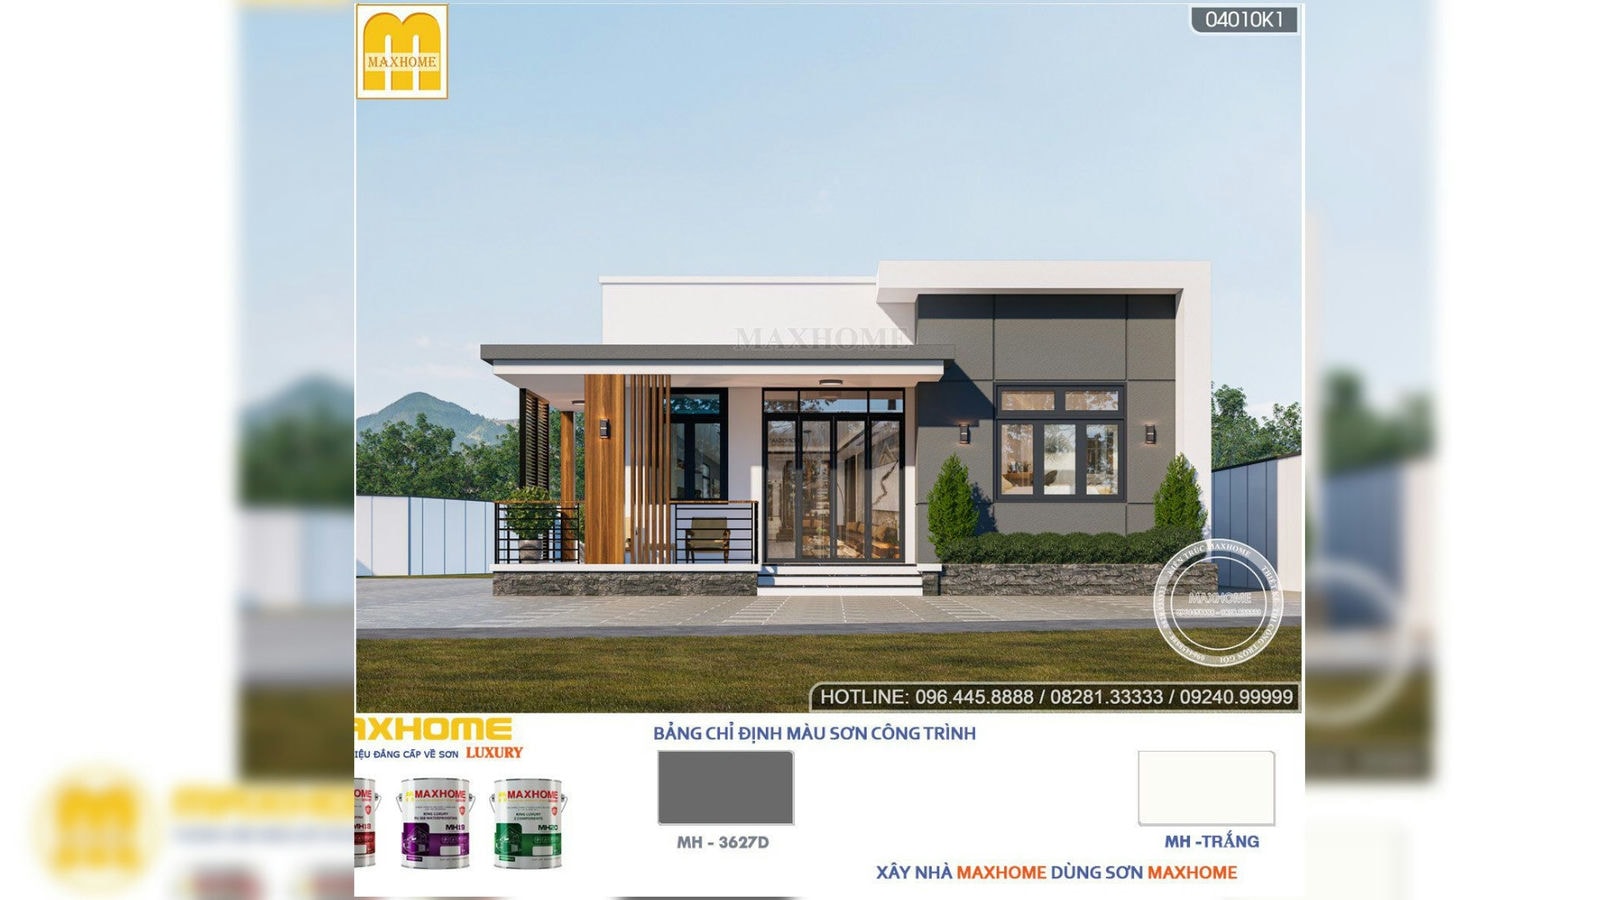 Nhà hiện đại 1 tầng đẹp ấn tượng, chi phí rẻ tại Thanh Hoá | MH02508